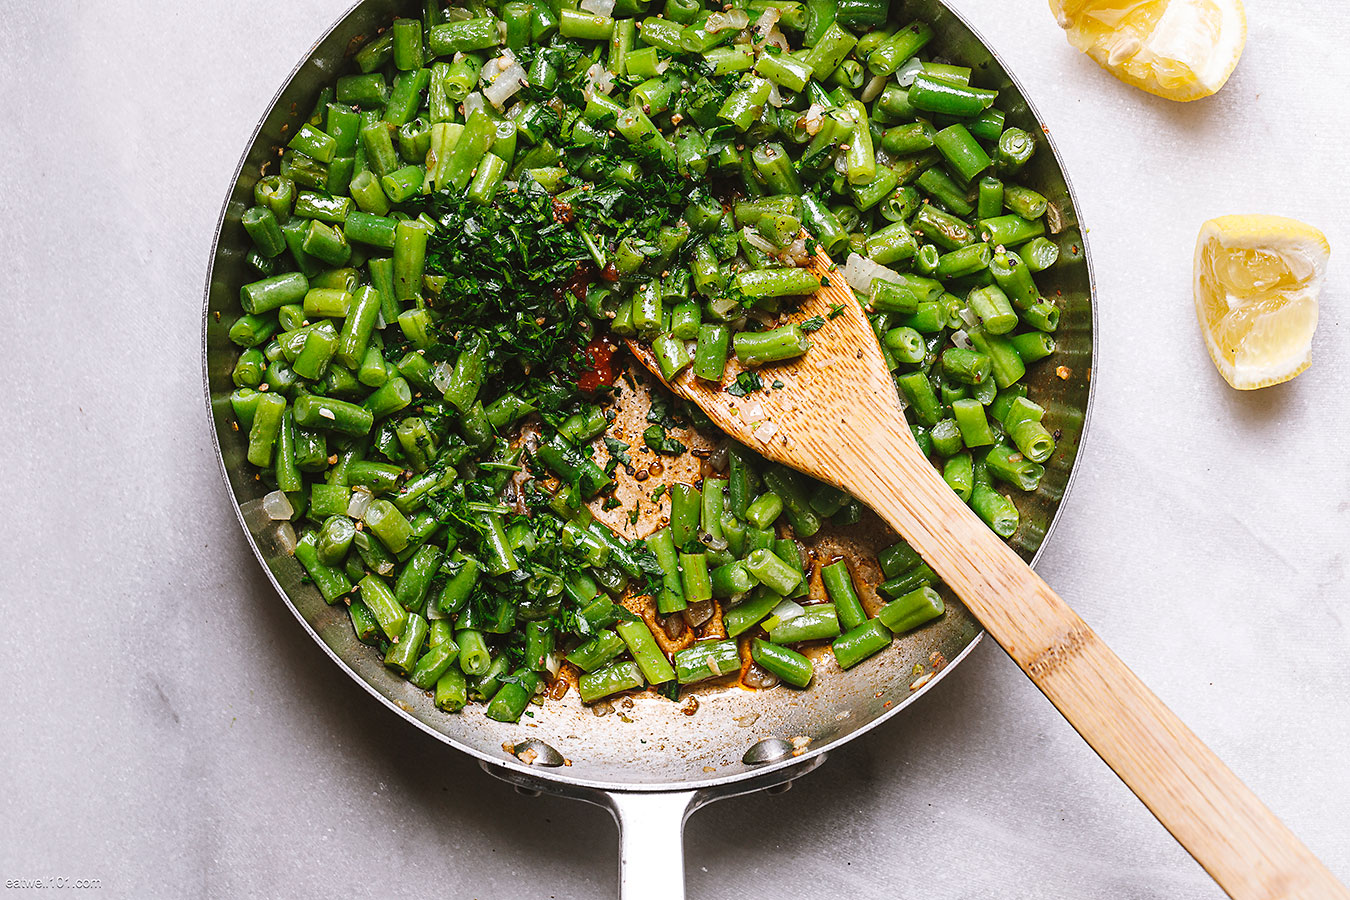 how do you make green beans taste good